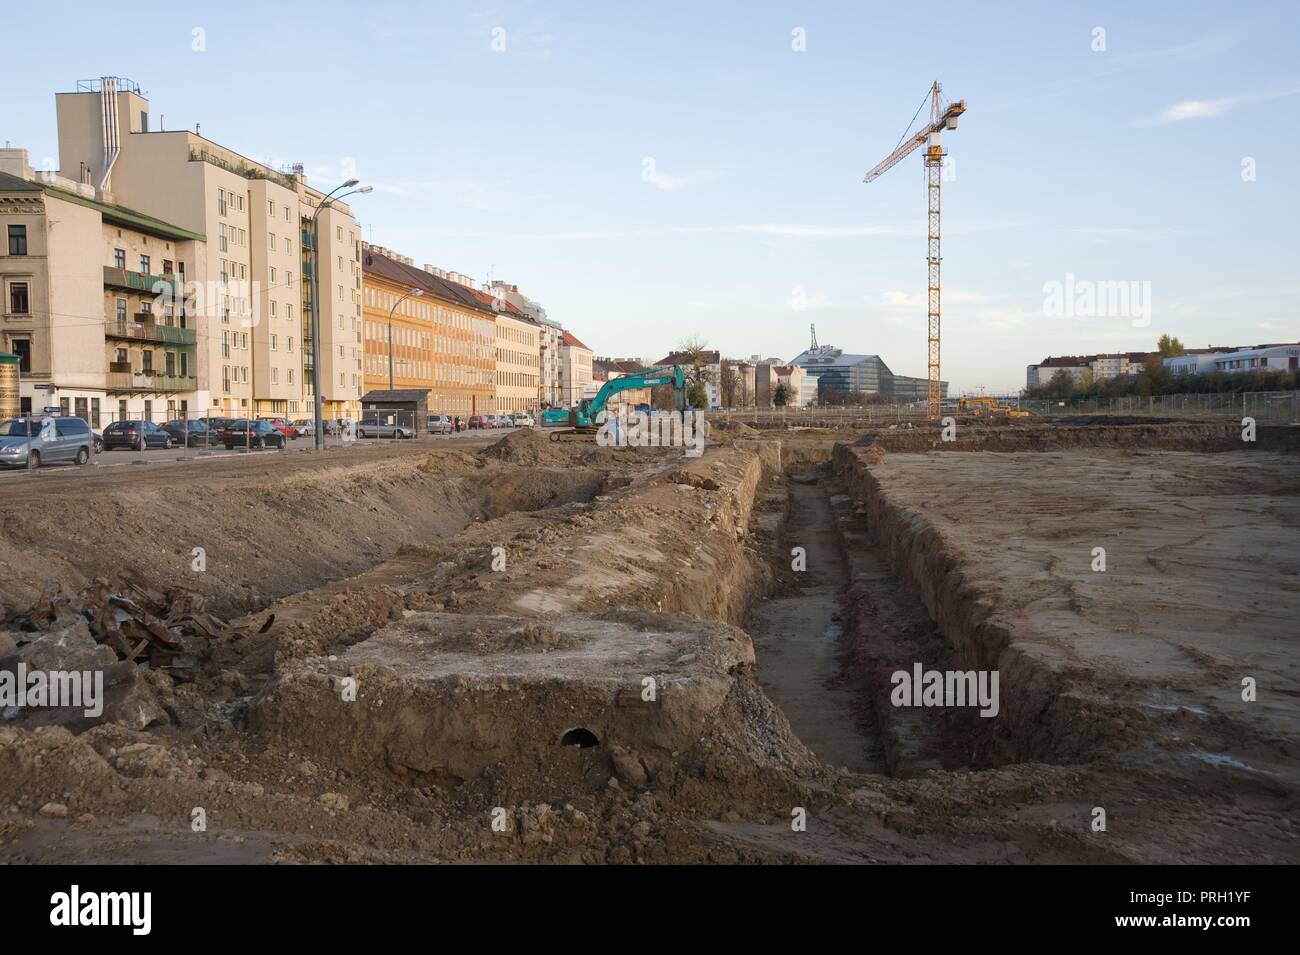 Wien, Stadtentwicklungsgebiet Aspangbahnhof, Ausgrabungen der ehemaligen Hafenbecken des Wiener Neustädter Kanals Foto Stock